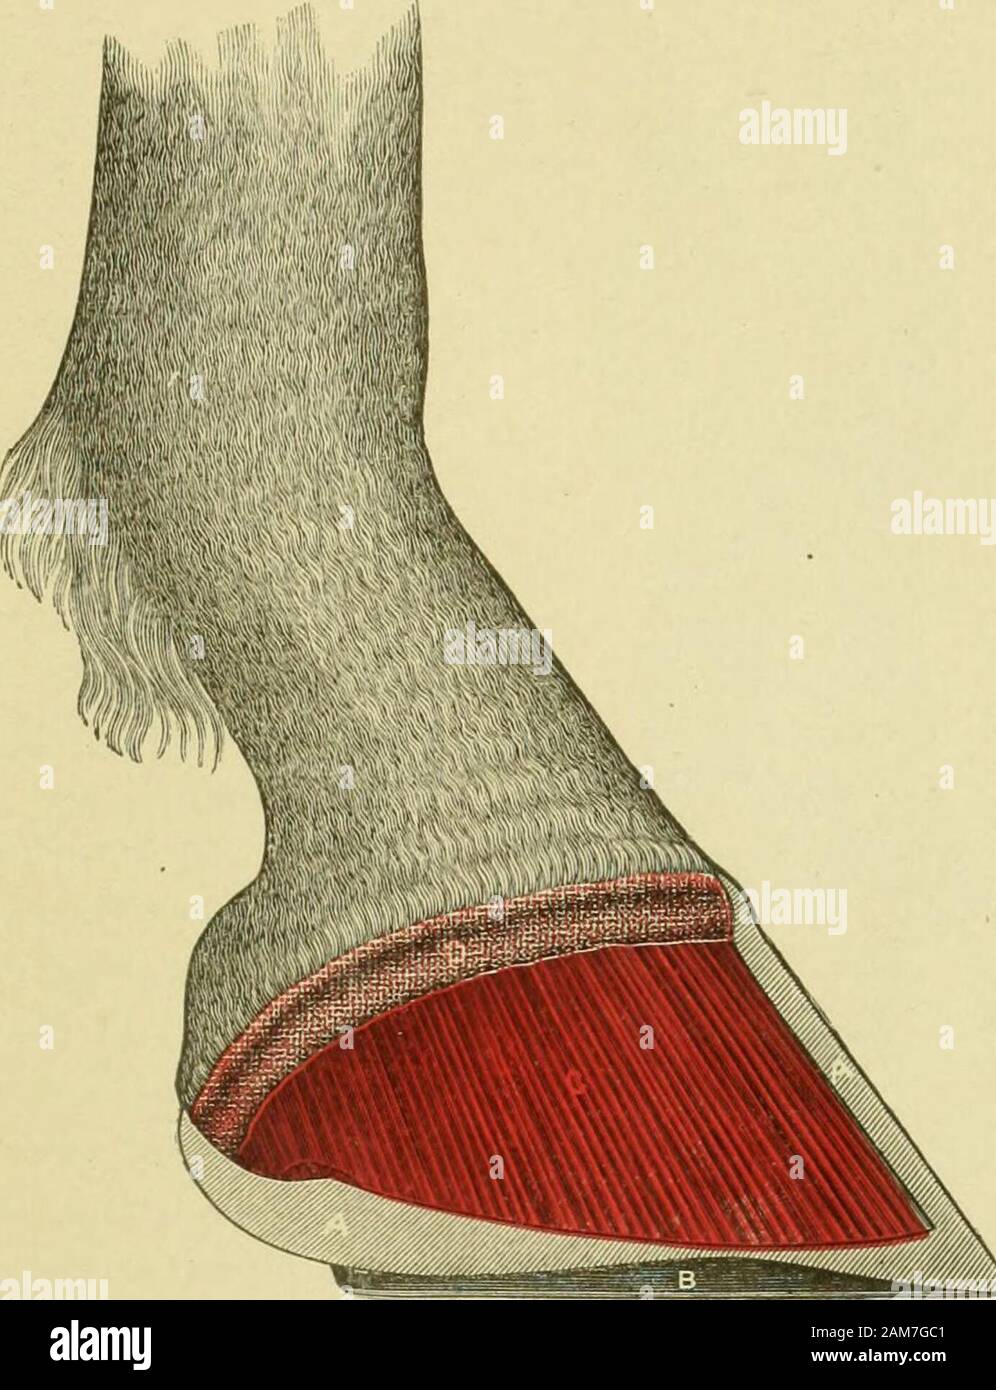 Vorschriften und Anweisungen für die Behandlung der Krankheit der Füße und Beine des Pferdes. Abb. 5. mittlere Partie des vorderen Ziffer, die von der Basis der Fuß der Kanone Knochen, die Anord- nung der Gelenk- und Muskel Apparates zu Kopf. Die gepunktete Linie durch die Mitte des digitalen Knochen zeigt Theline von Gewicht von oben nach unten, und Mark thenormal ans^ le des Fußes. Der Fuß des Pferdes. 85. Abb. 6. Seitliche Ansicht der äußeren Hälfte des rechten vorderen Fuß mit Wand des Hufes entfernt, zeigt zahlreiche Blätter DER SENSITIVELAMIXAL Gewebe. Ein Medianschnitt des Hufes, fortgesetzt durch Stockfoto